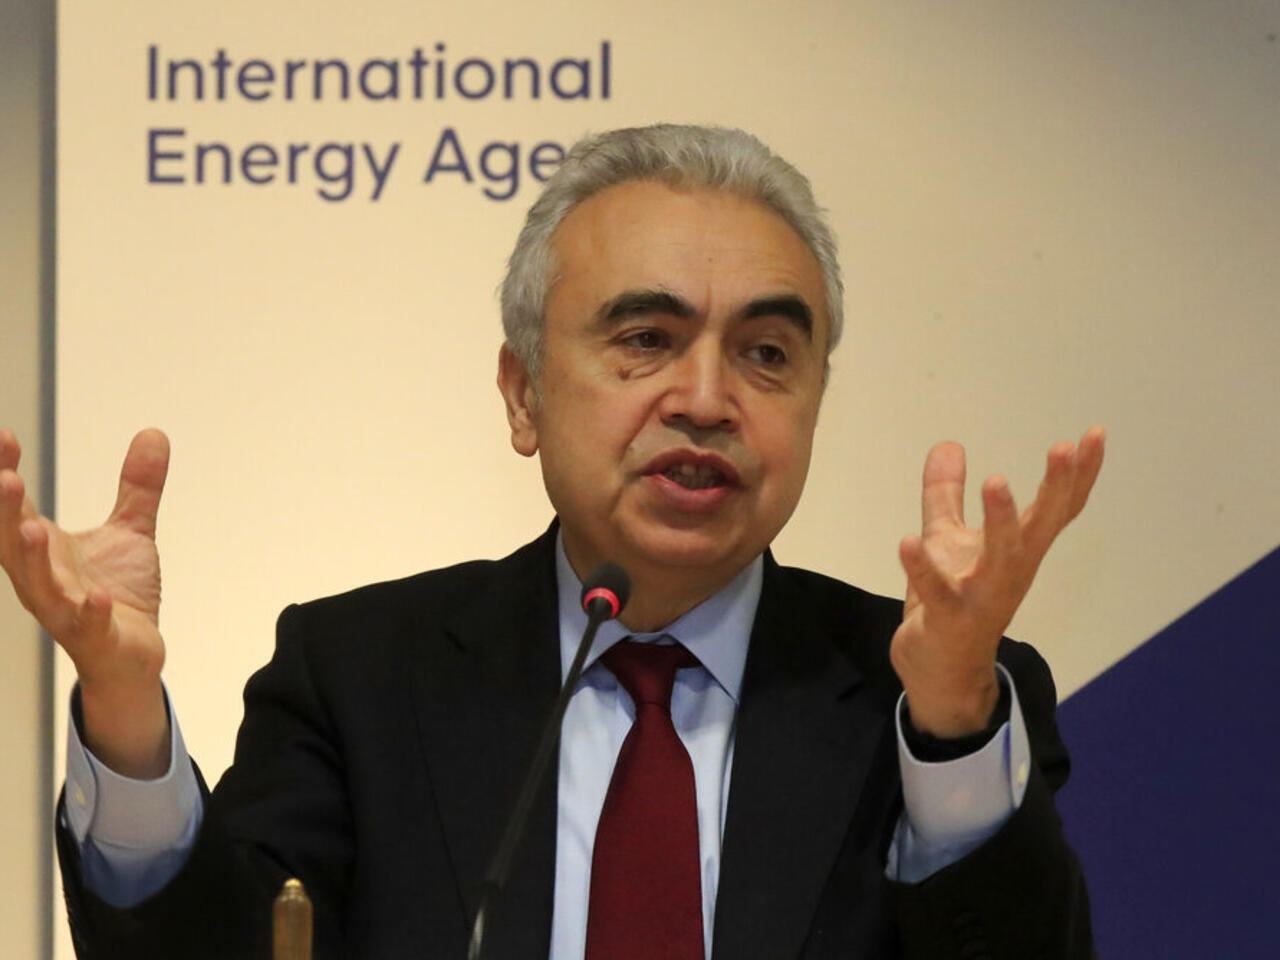 Giám đốc IEA, Fatih Birol: Cần xác định đâu là năng lượng cần ưu tiên phát triển